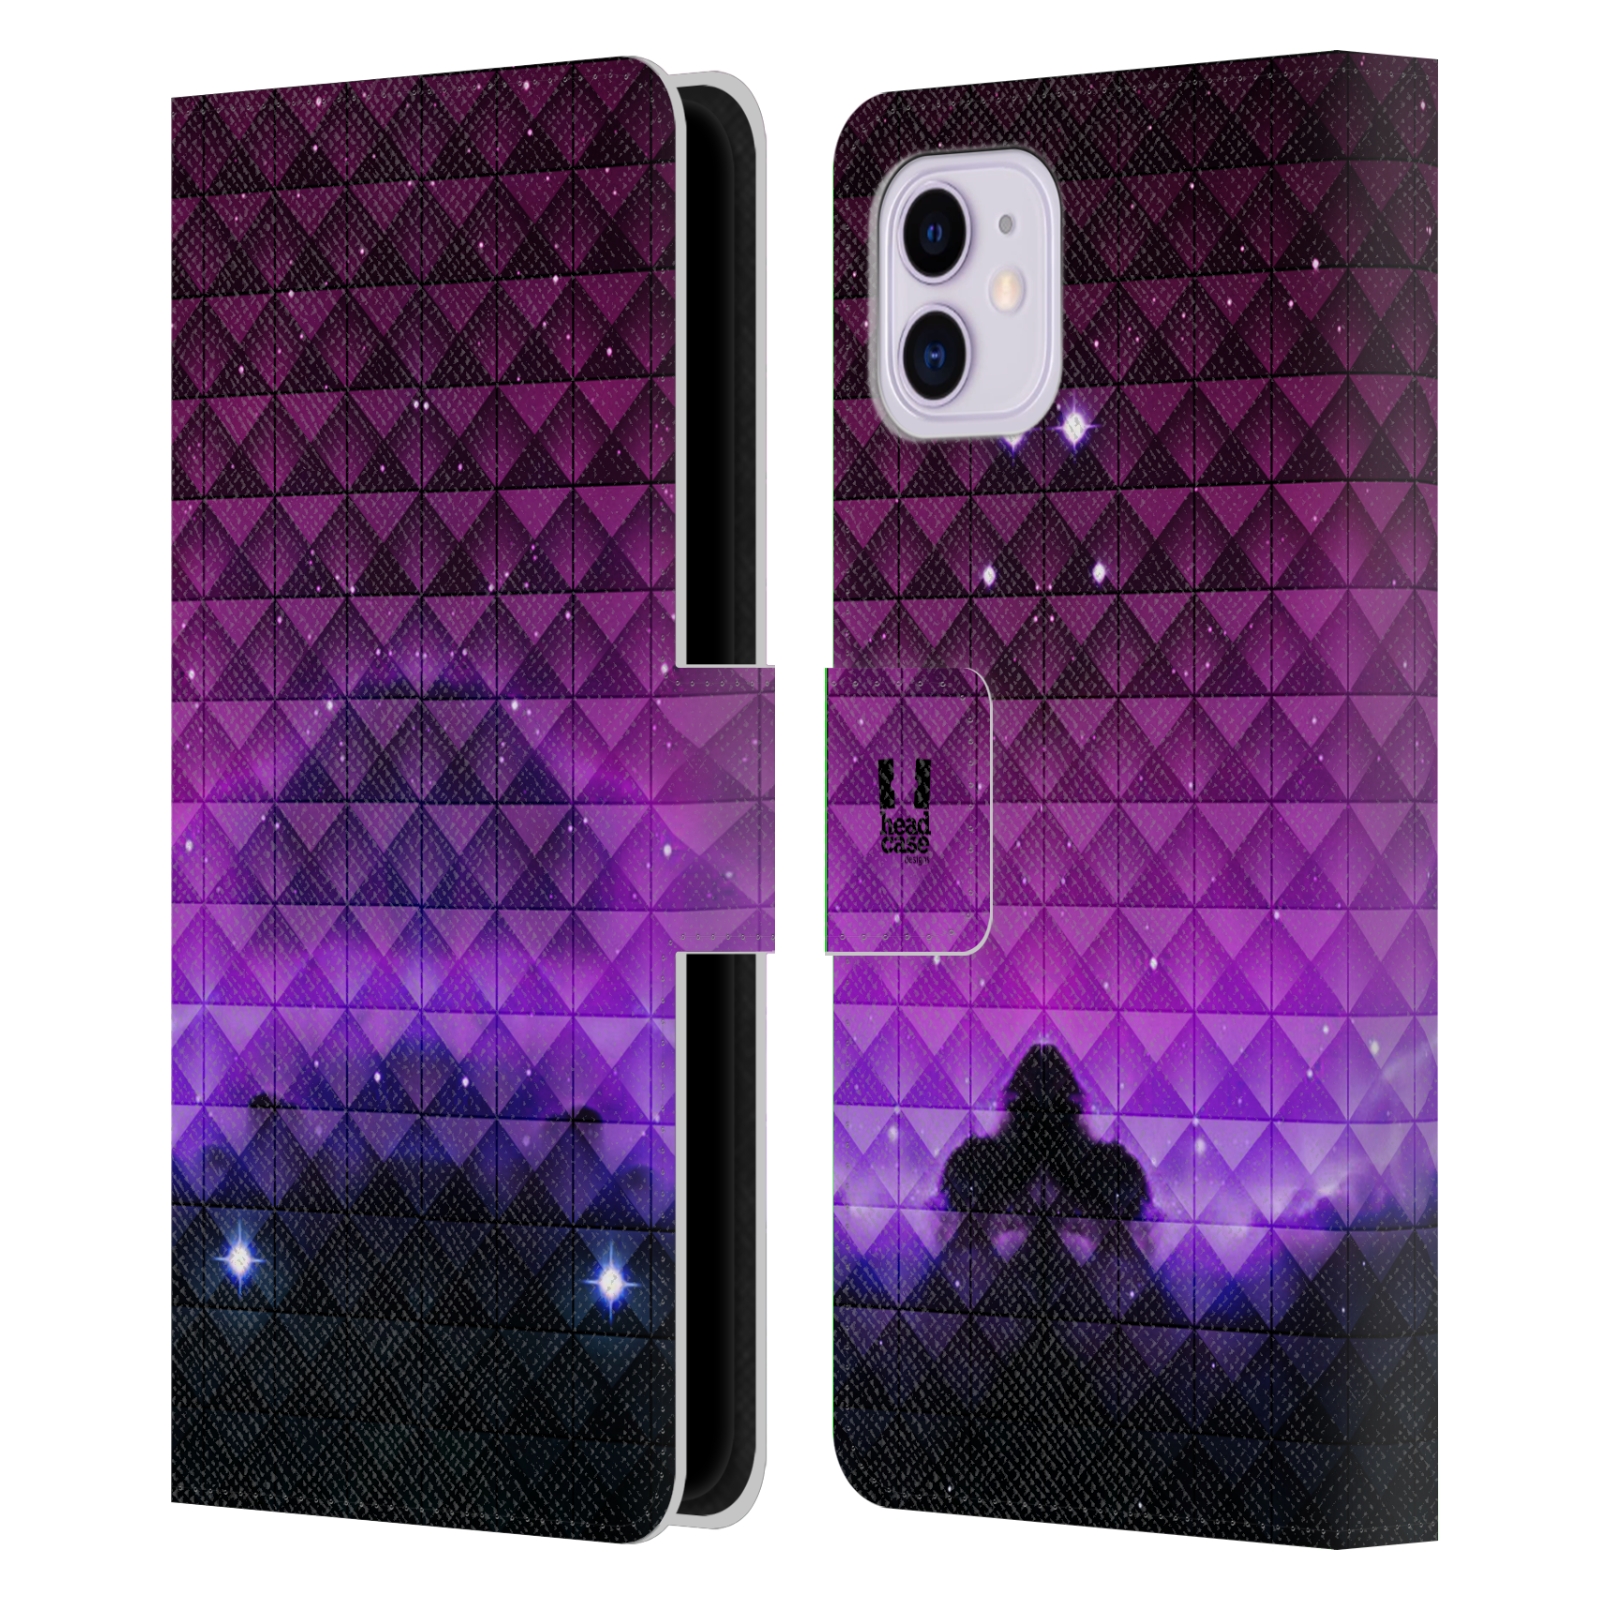 Pouzdro na mobil Apple Iphone 11 barevná vesmírná mlhovina fialová a černá